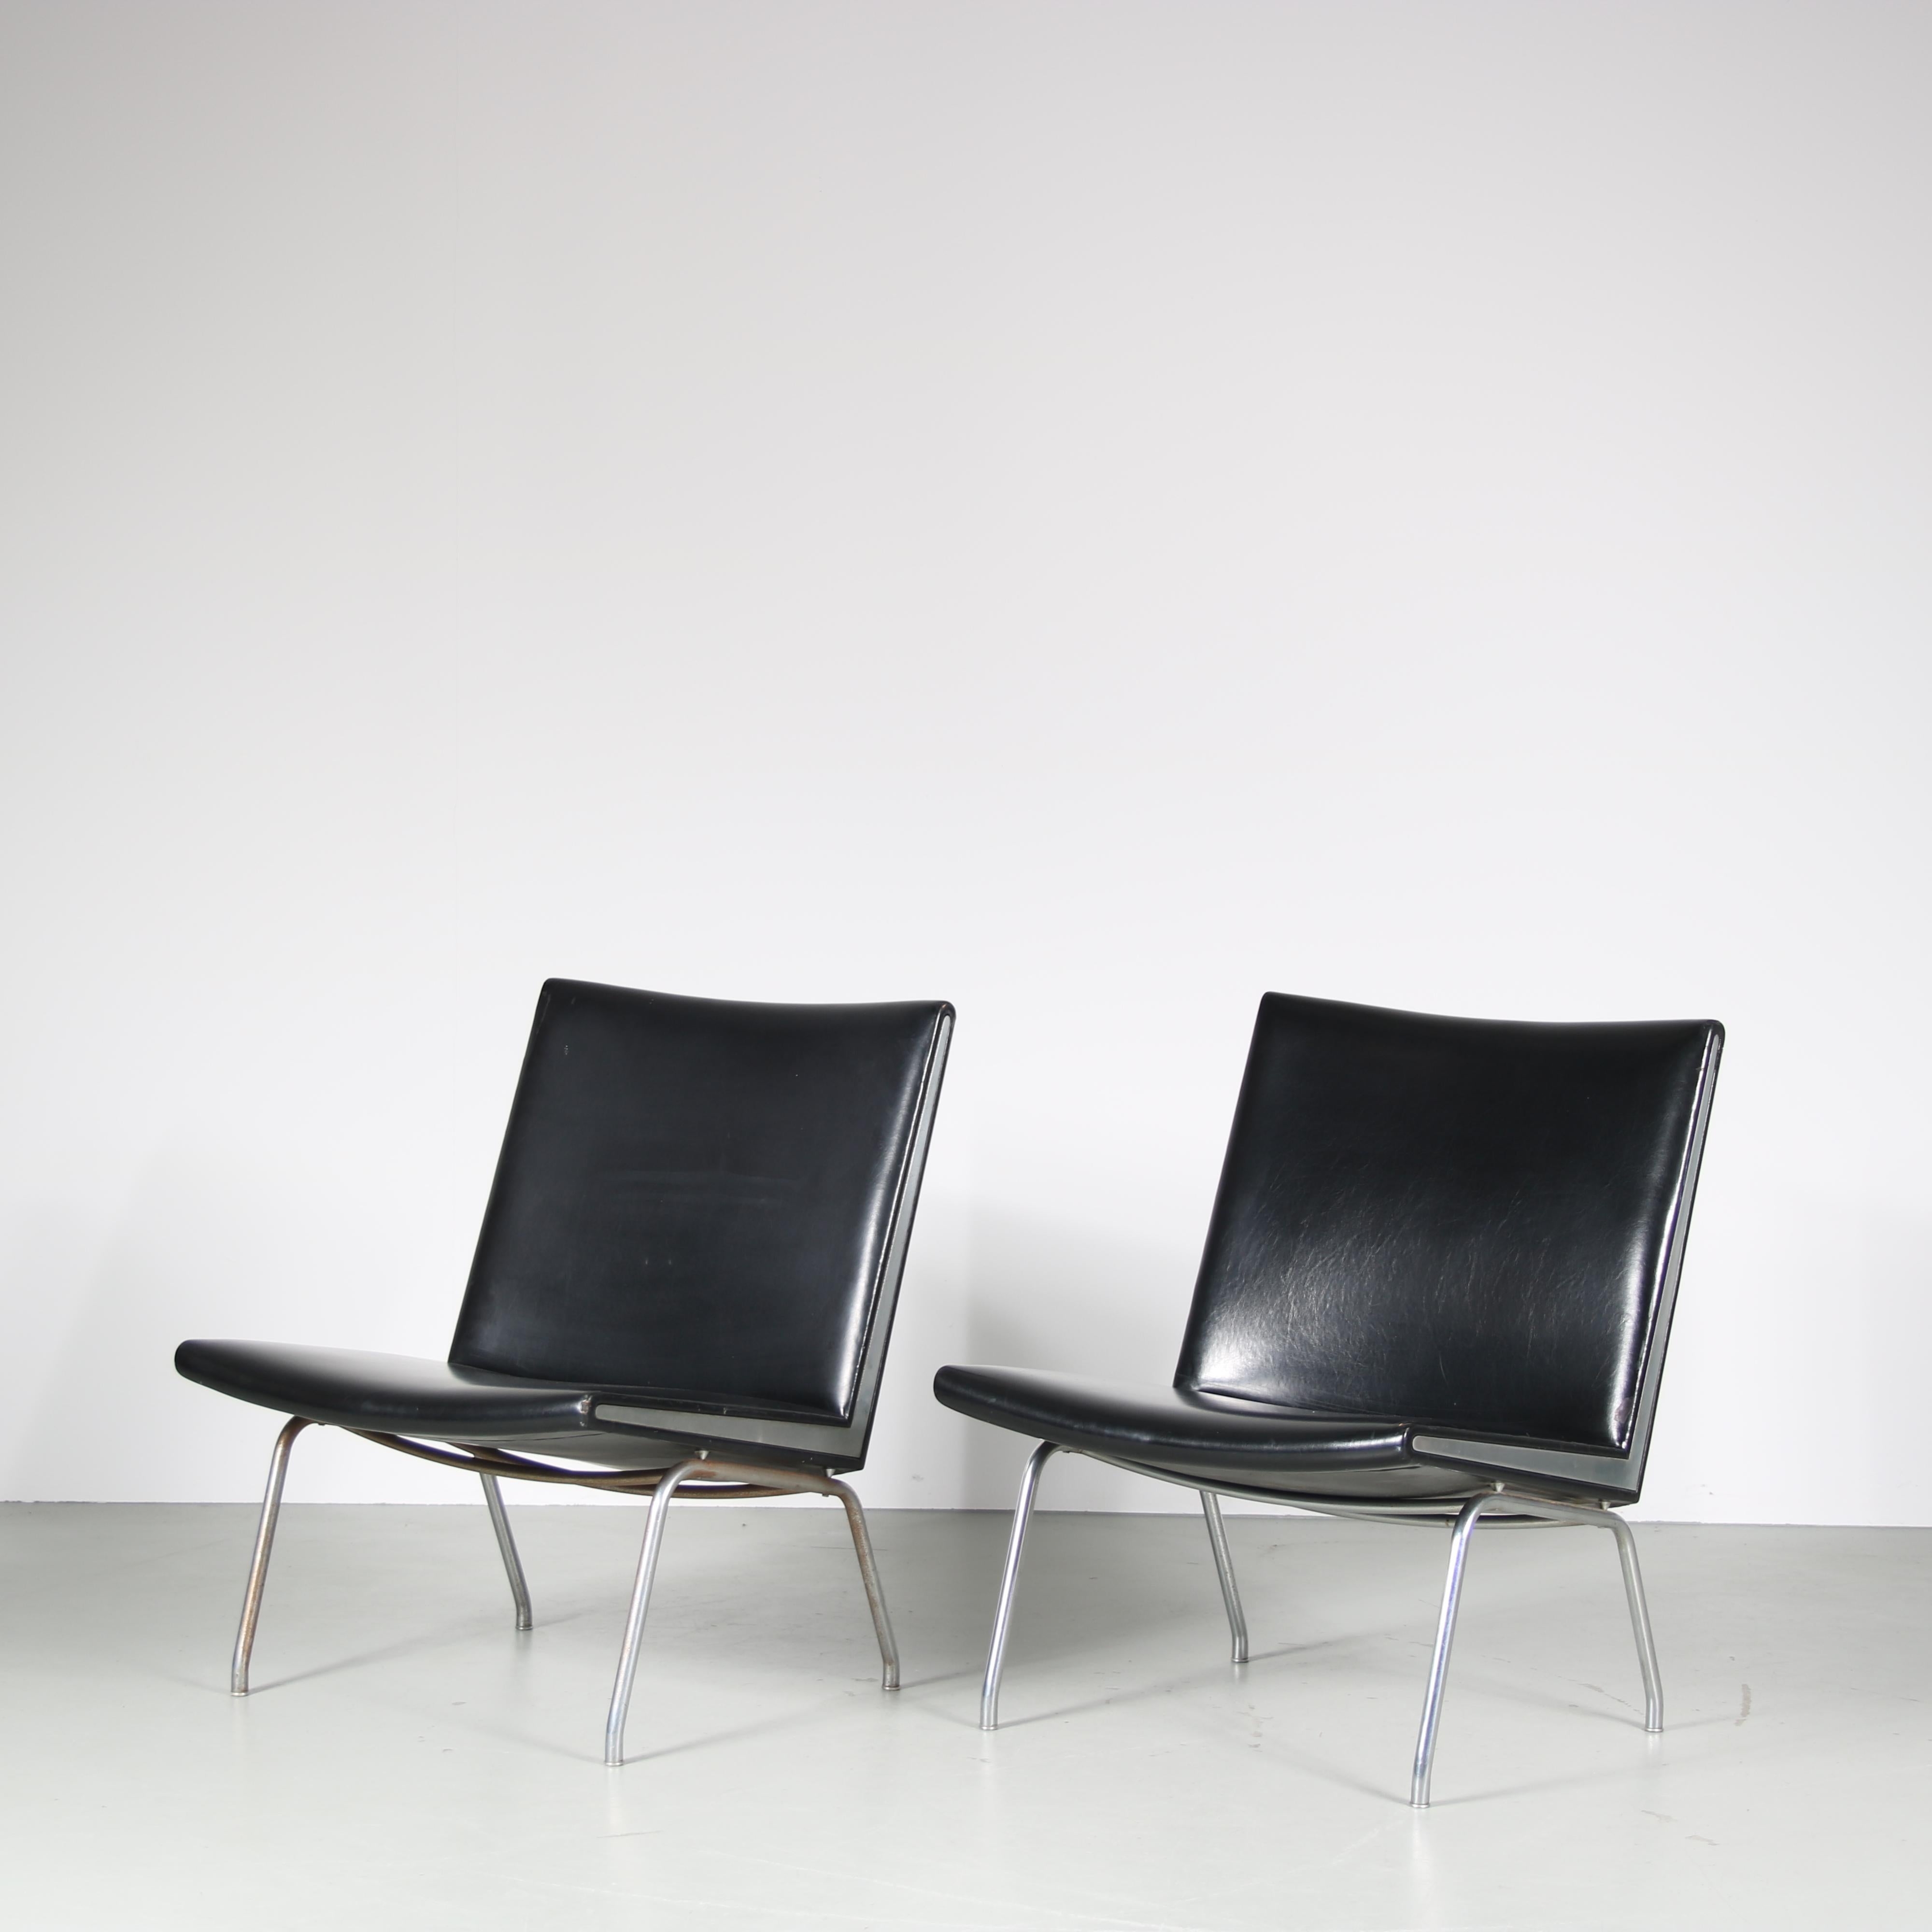 Années 1960 Paire de chaises longues sur socle en métal chromé avec revêtement en skaï noir et détails chromés, modèle Airport / Hans J. Wegner / AP Stolen, Danemark

Une paire de chaises 